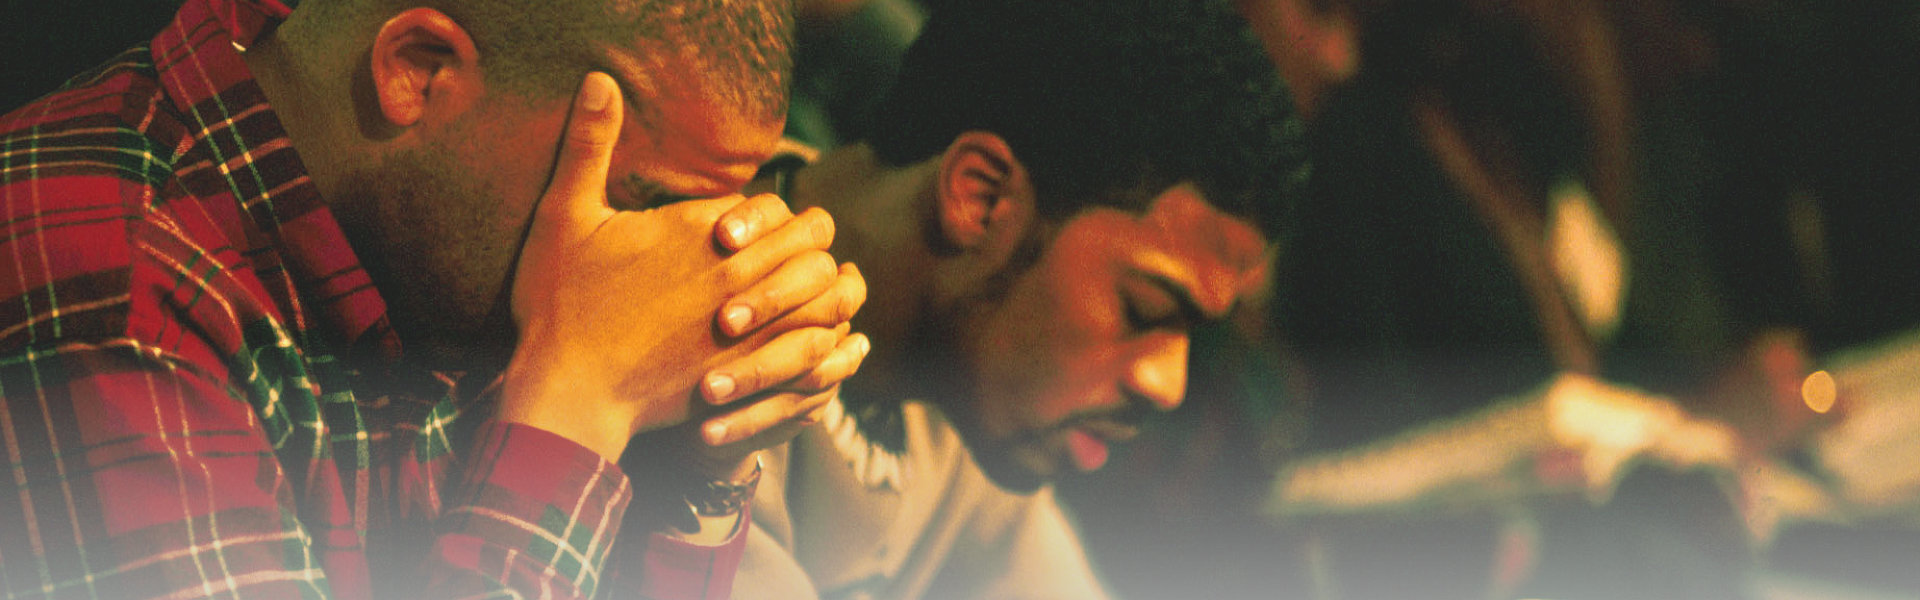 two man praying